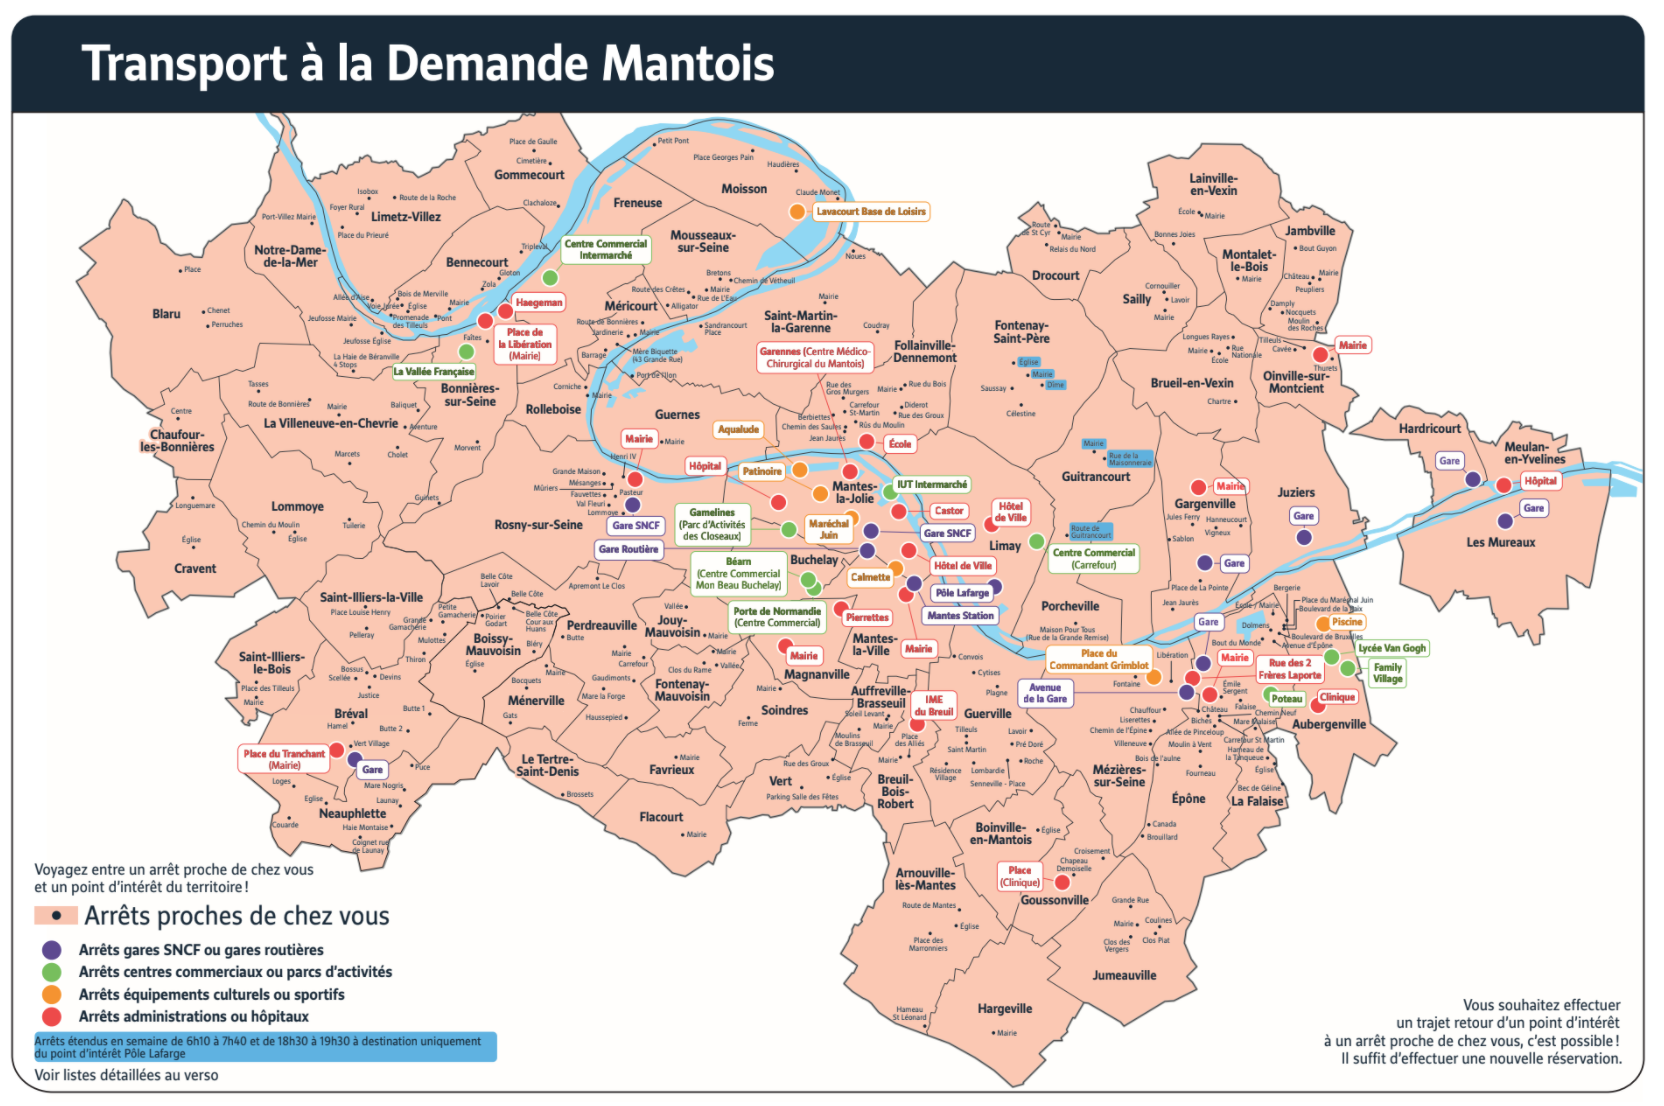 Carte du service du territoire du Mantois desservi par le Transport à la Demande.